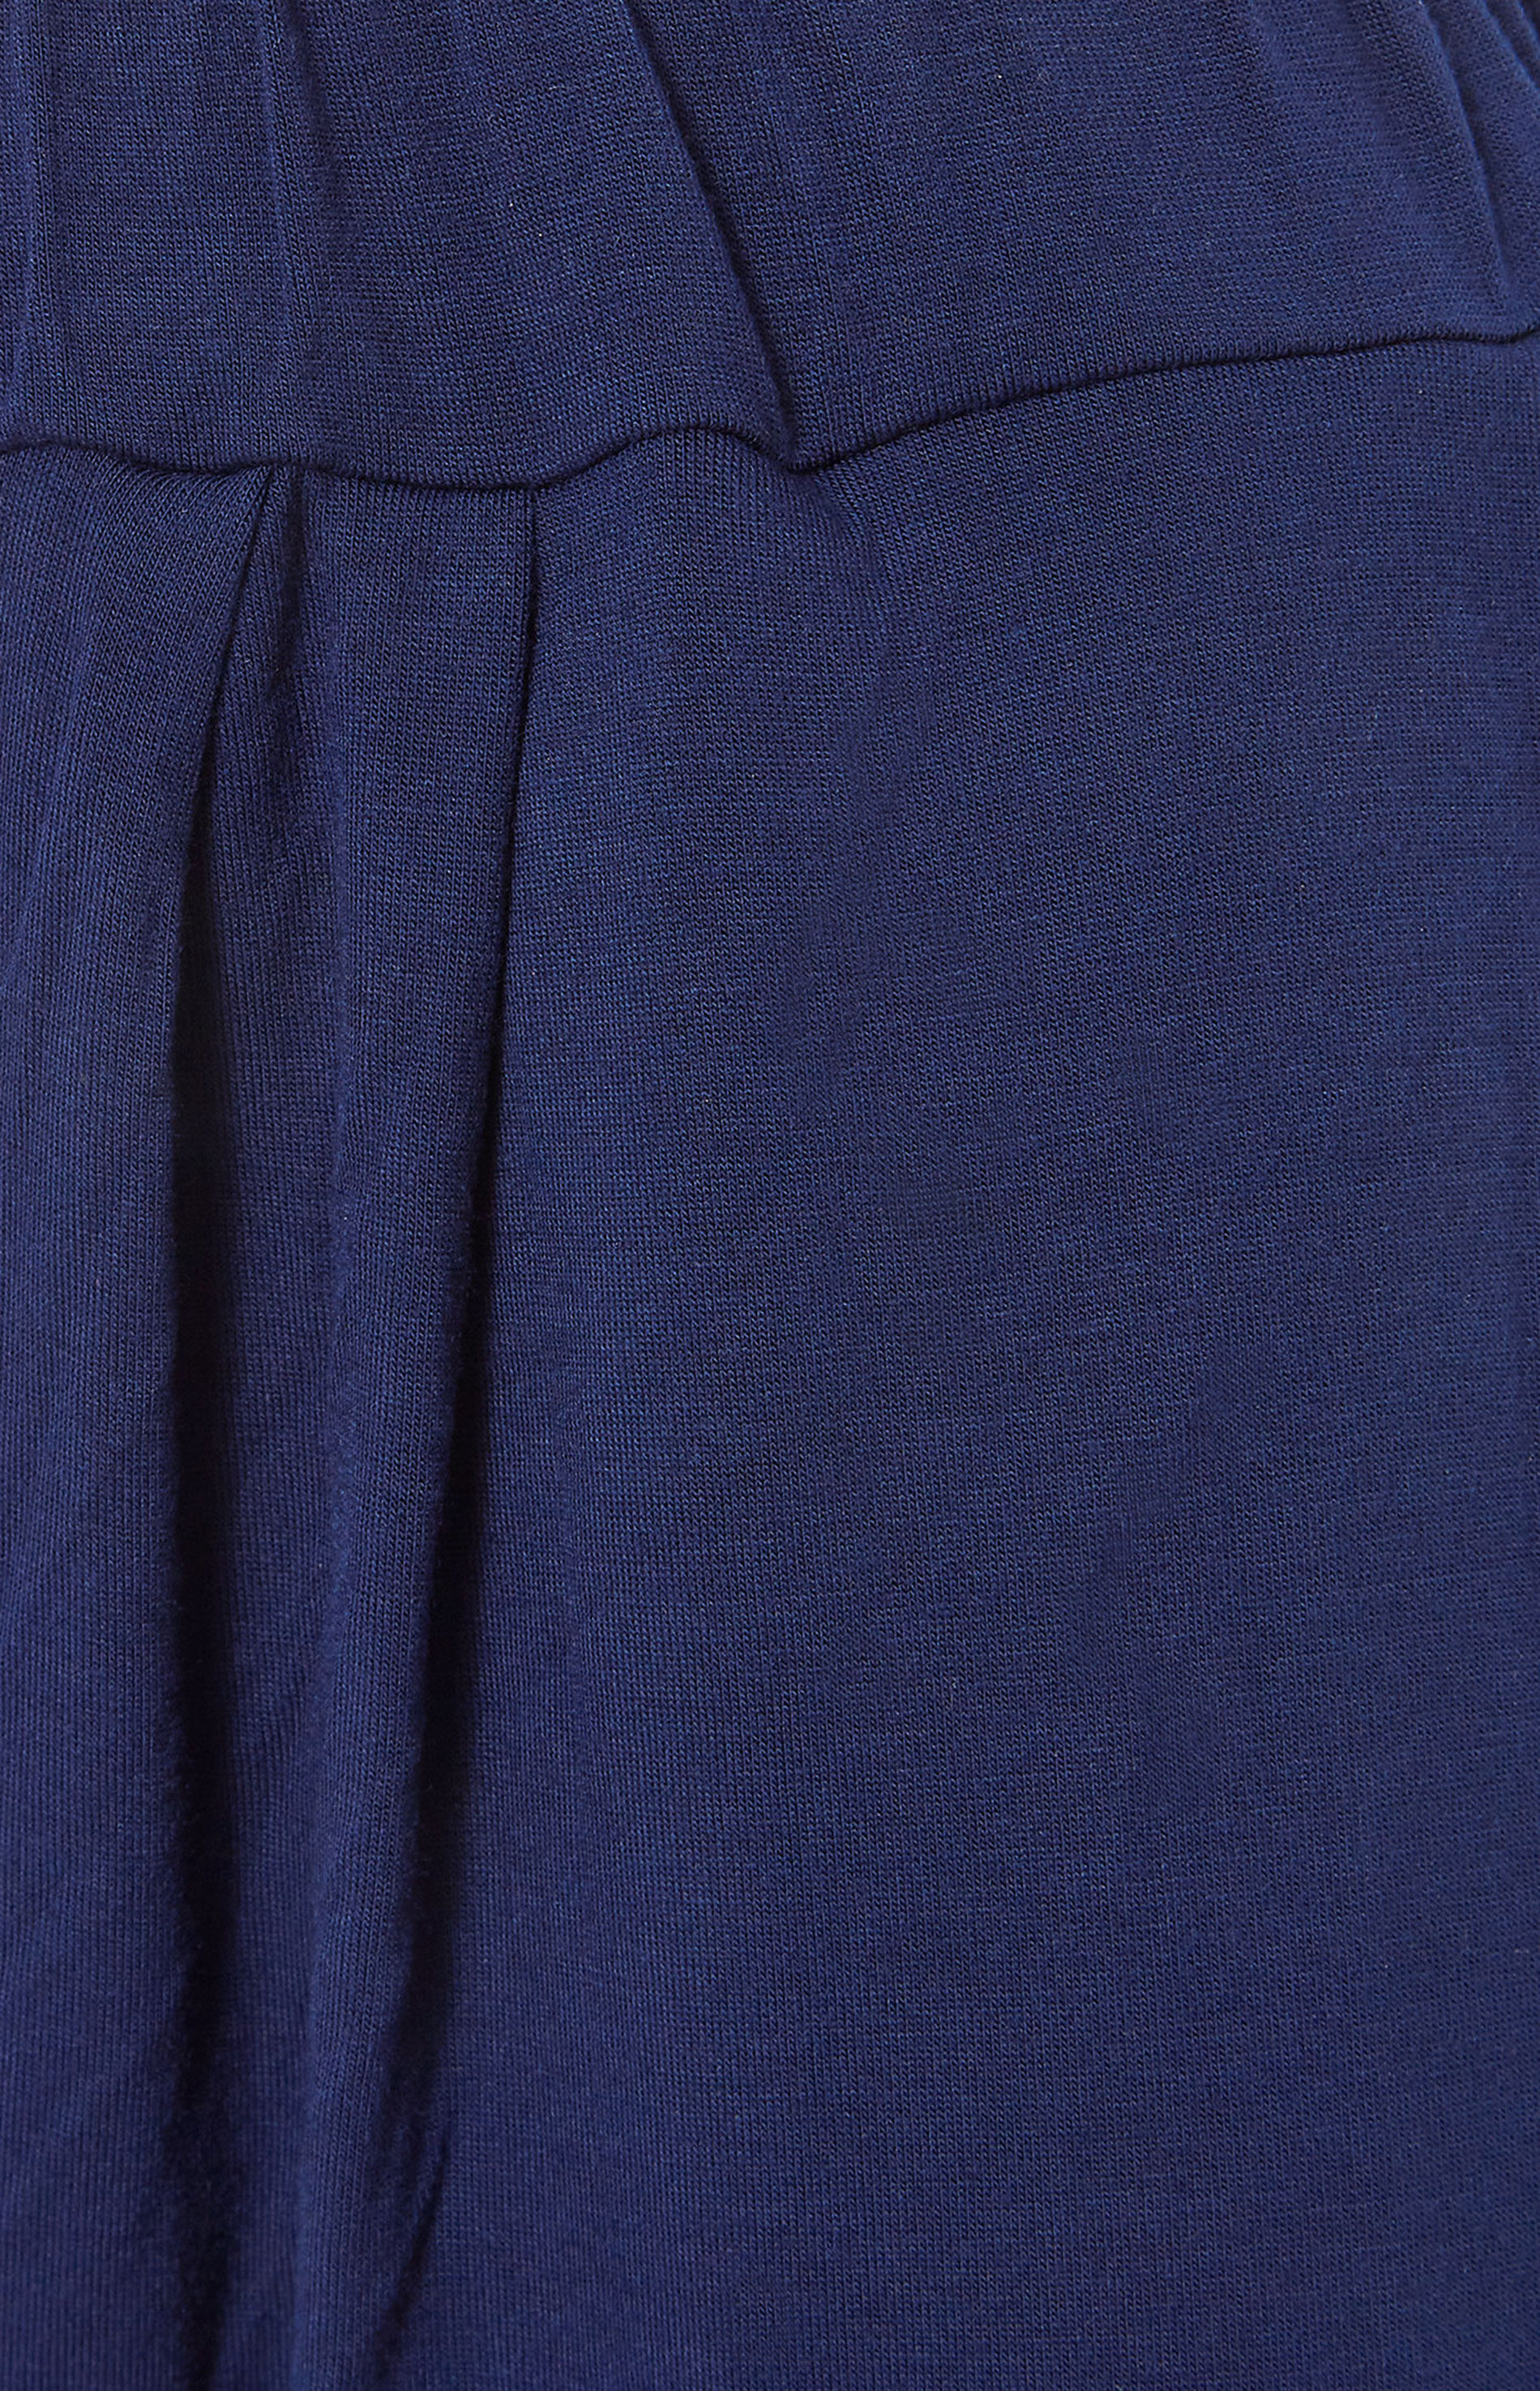 LTS Tall Women's Navy Blue Harem Trousers | Long Tall Sally